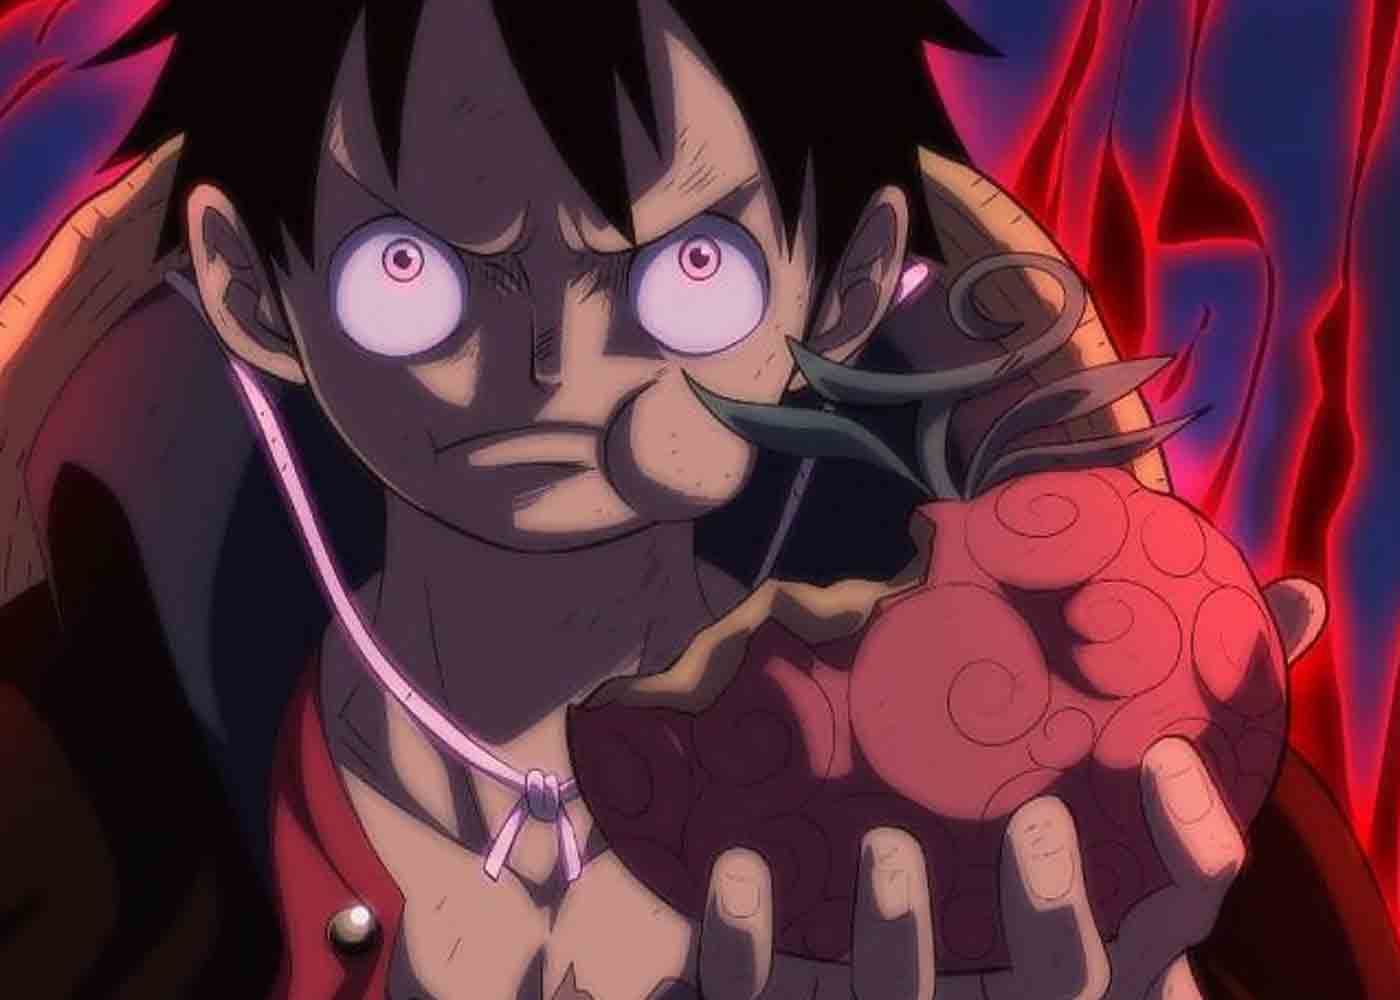 4 Buah Iblis di Anime One Piece yang Memiliki Kesamaan dari Jenis  Kekuatannya, Siapa yang Kuat? - Ihwal - Halaman 2